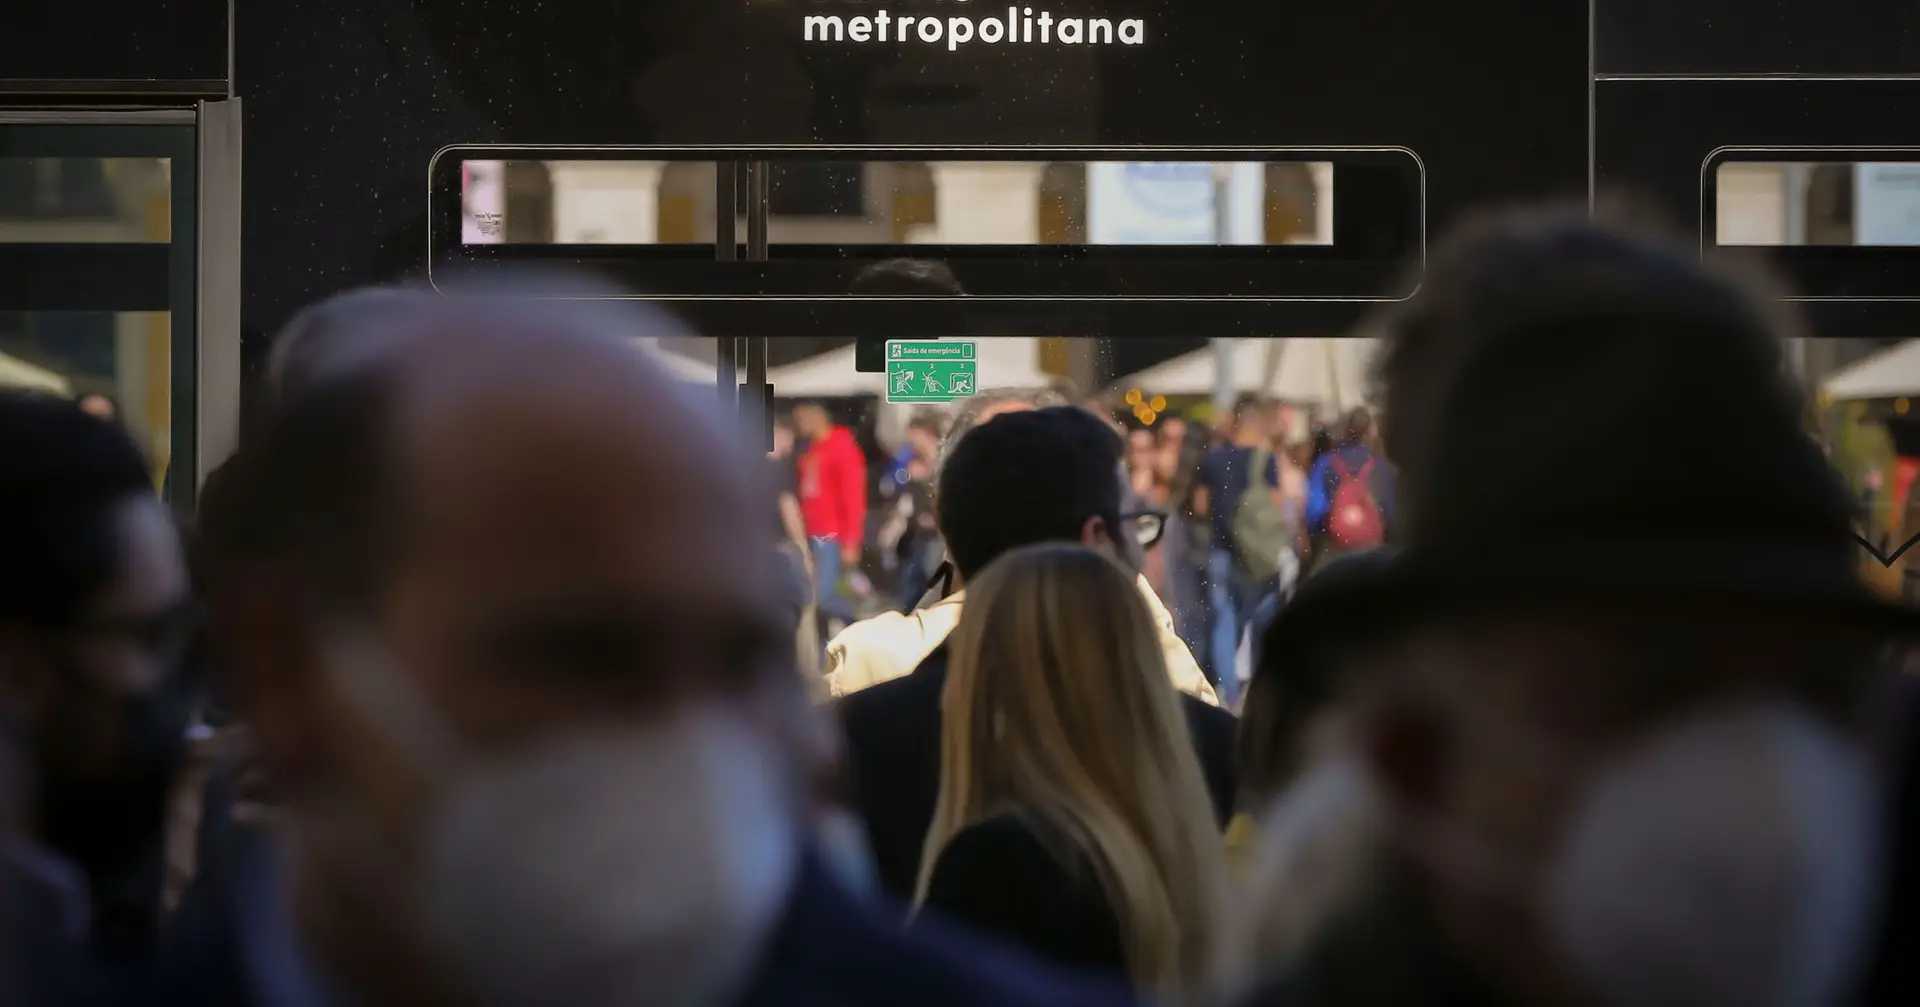 Falta de formação, folhas de serviço em castelhano: motoristas queixam-se, Metropolitana repõe horários antigos na Margem Sul por 15 dias